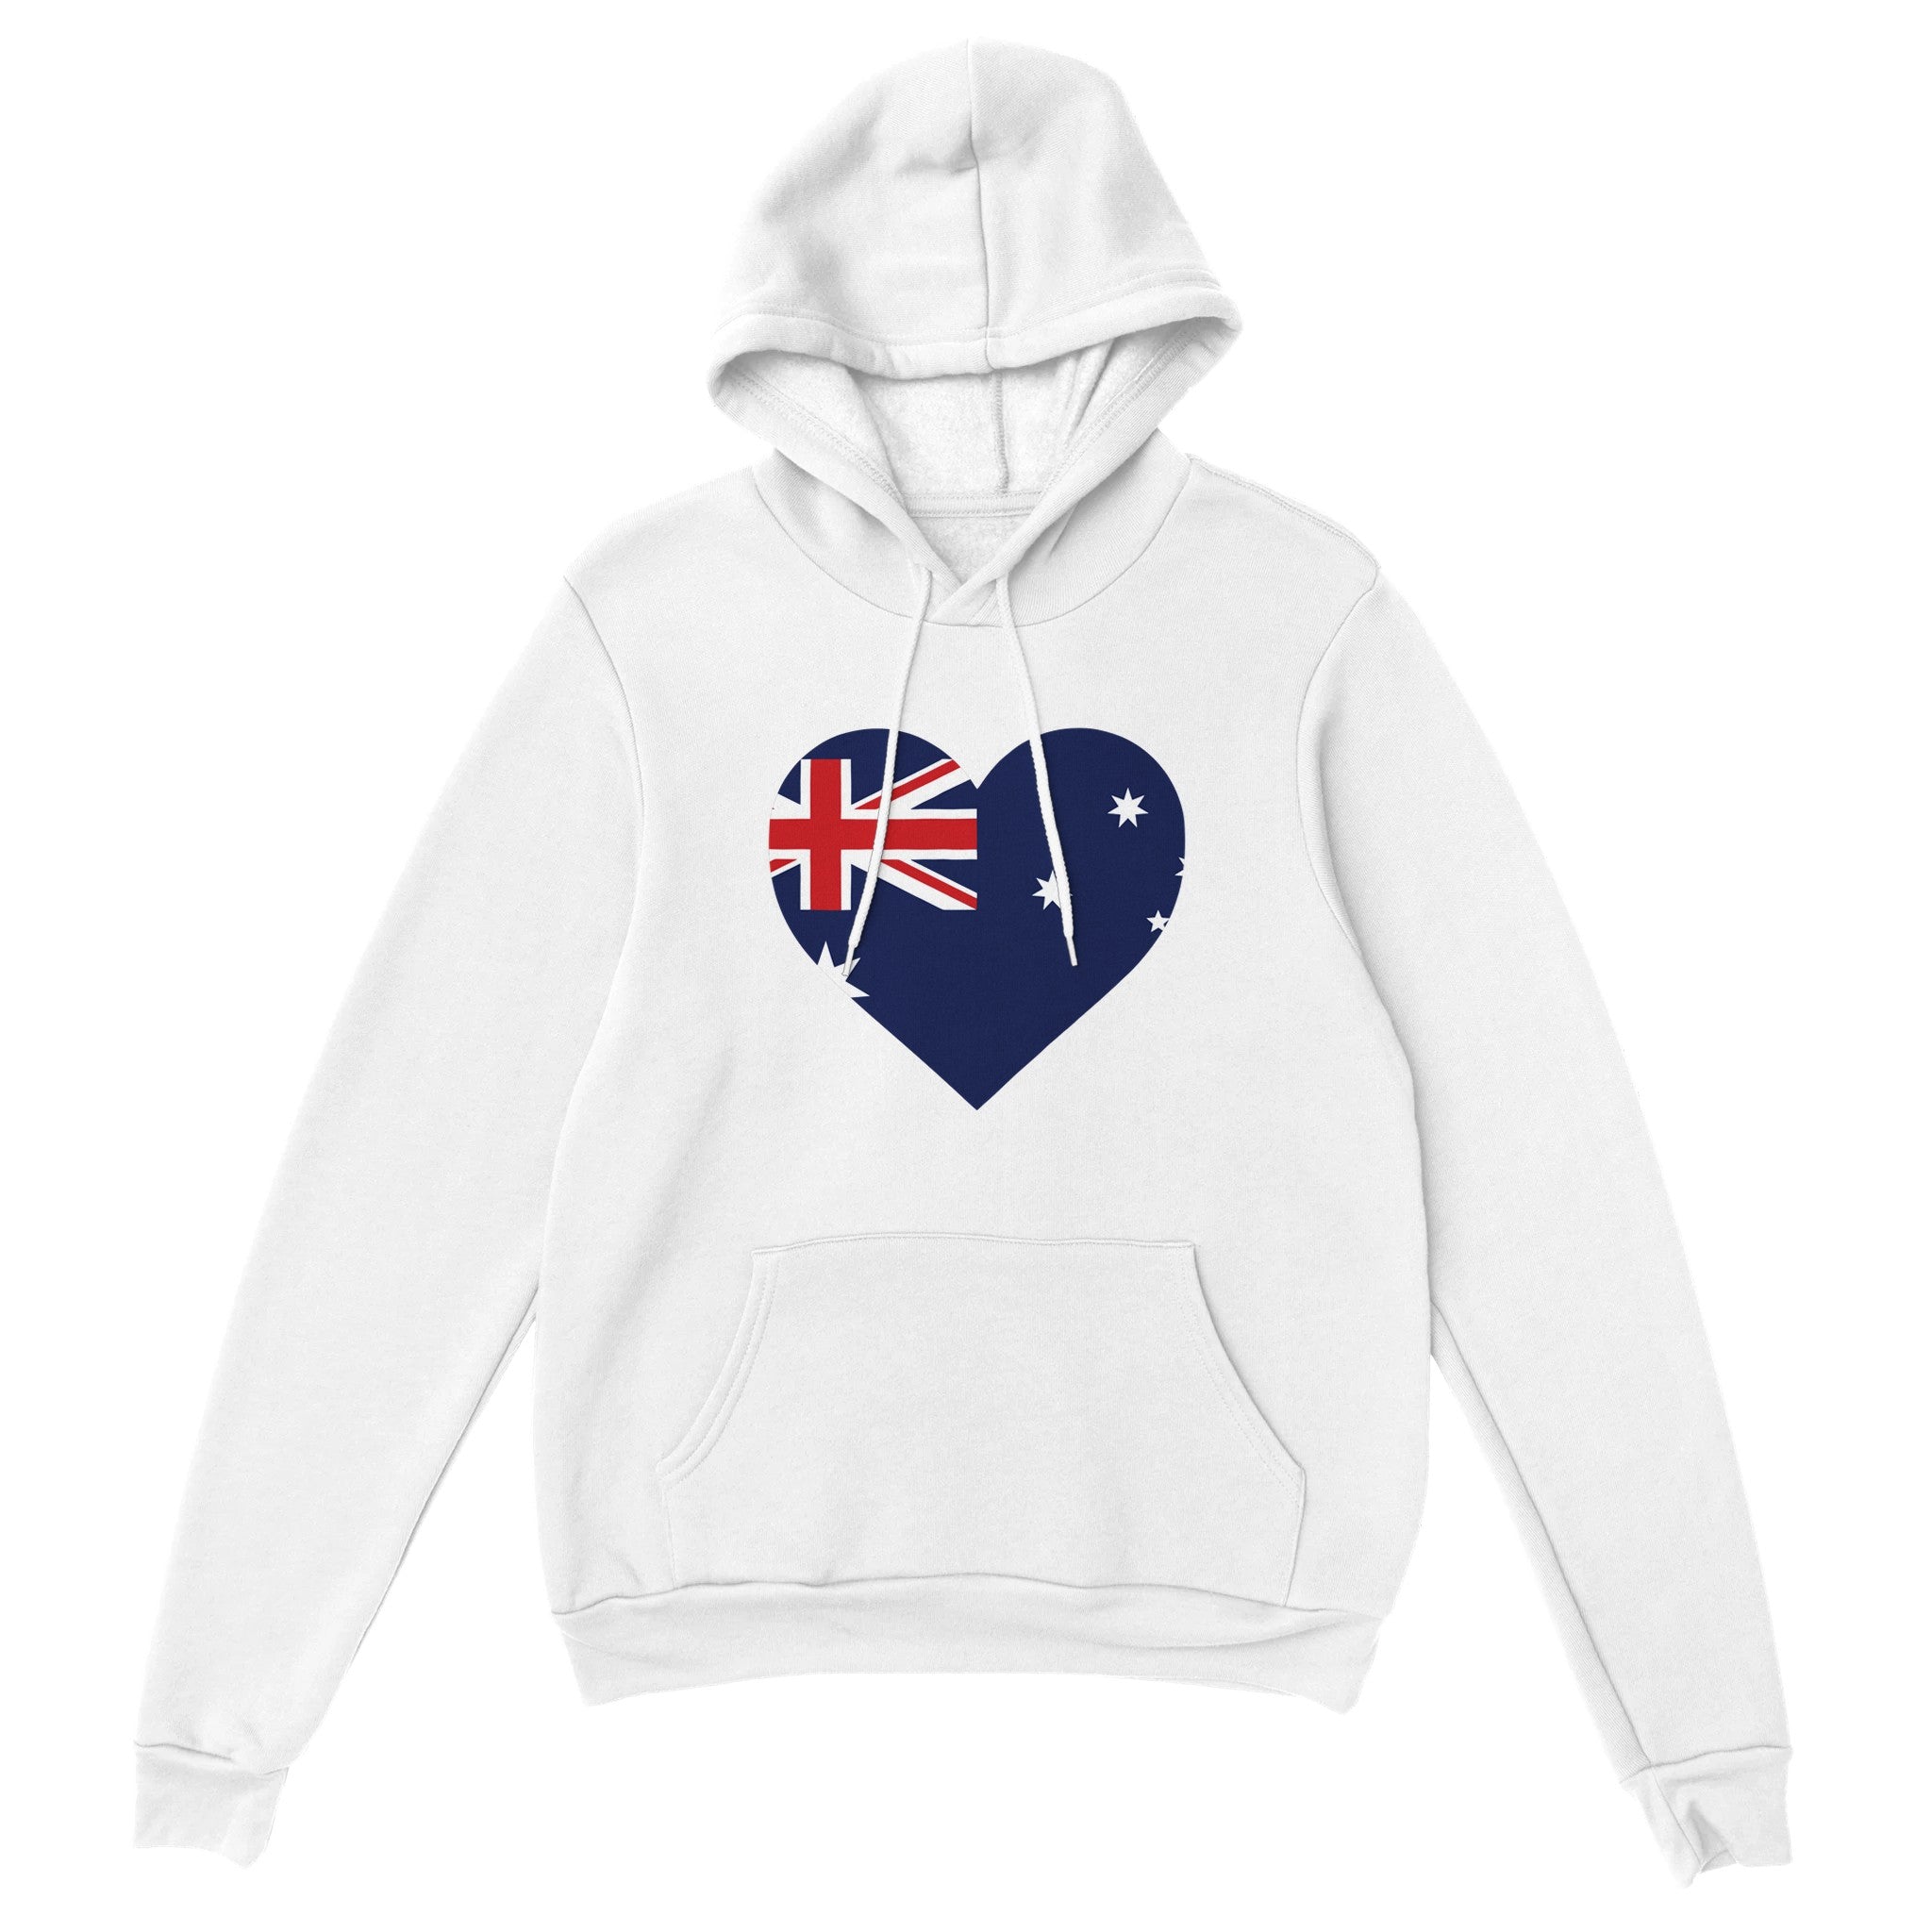 'Australia' hoodie - In Print We Trust